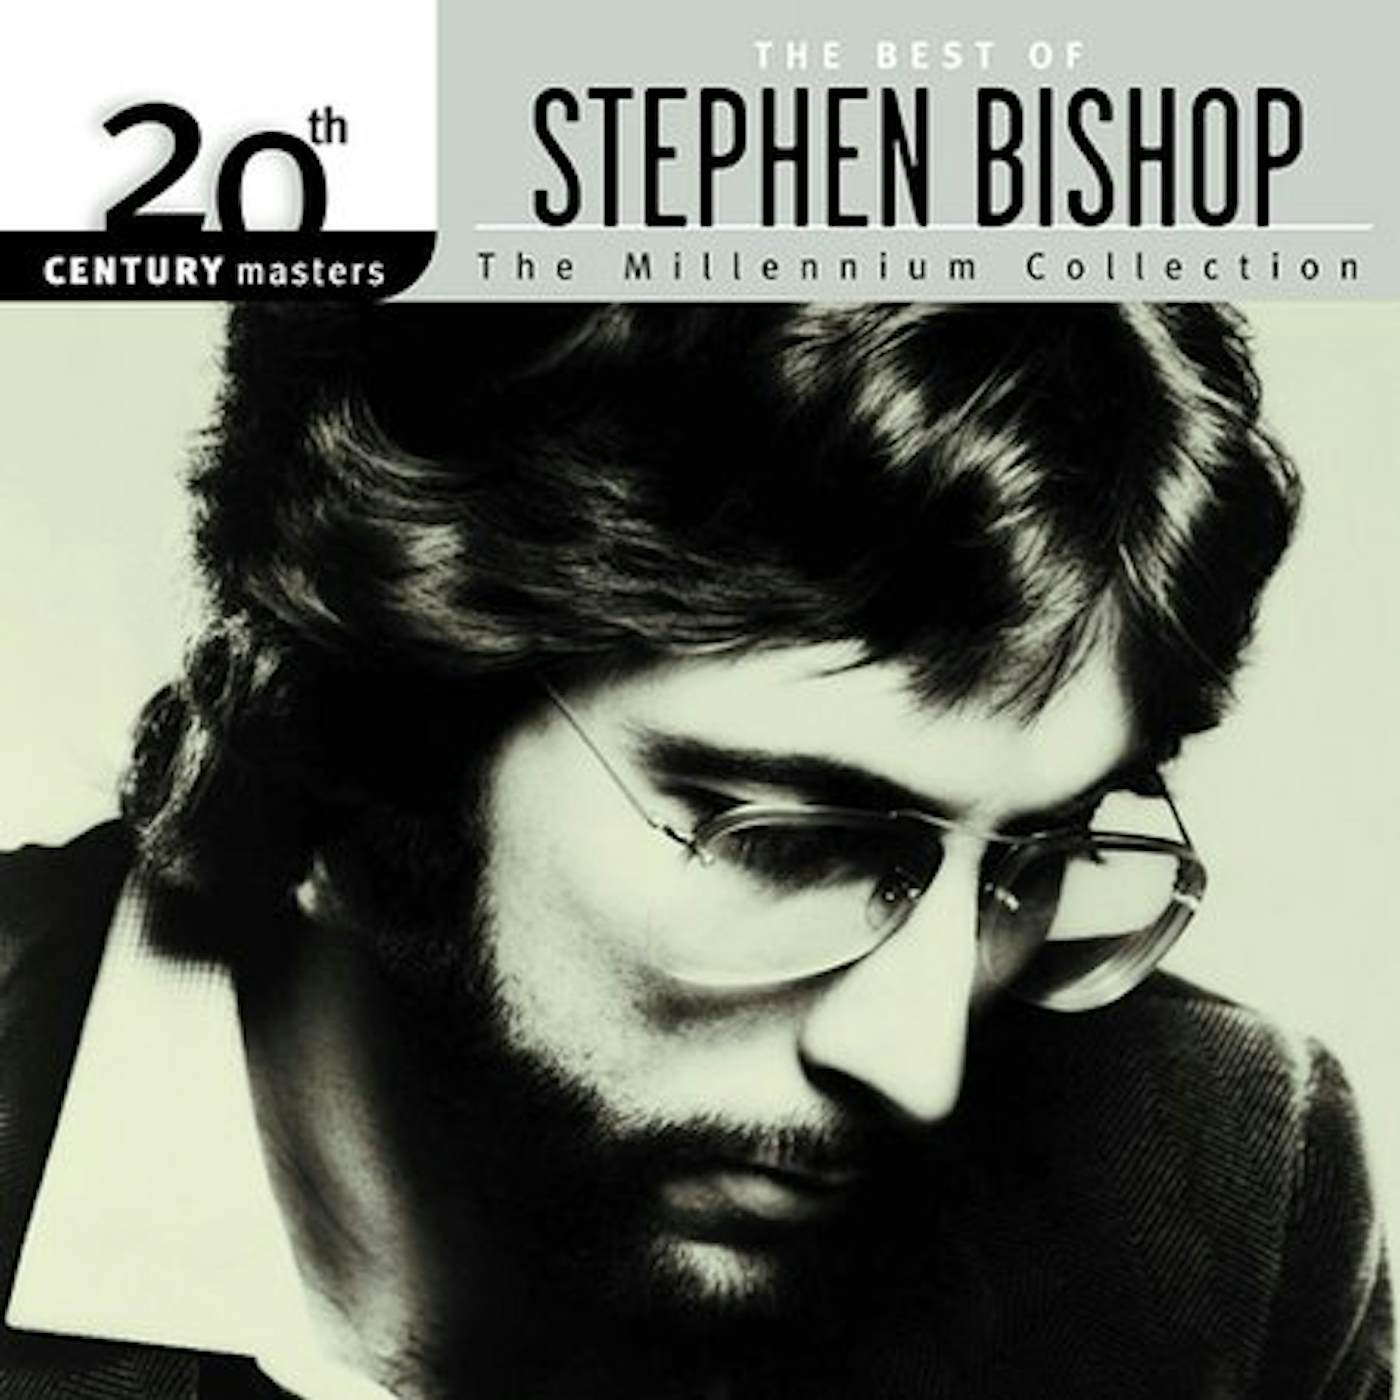 Stephen Bishop 20TH CENTURY MASTERS: MILLENNIUM COLLECTION CD